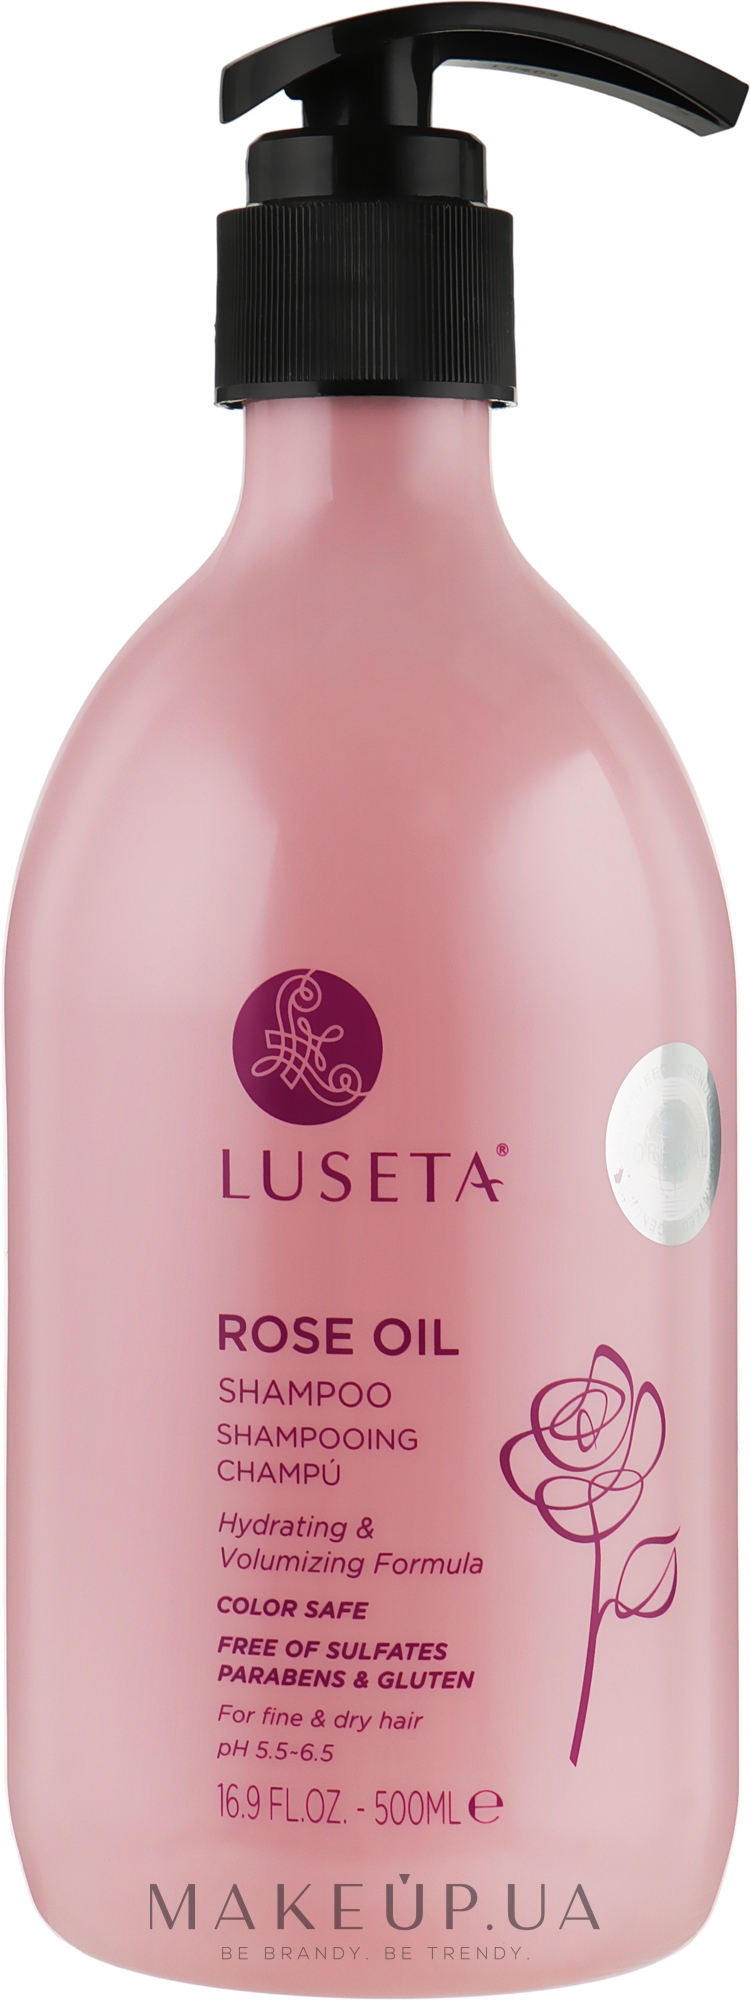 luseta szampon rose oil opinie